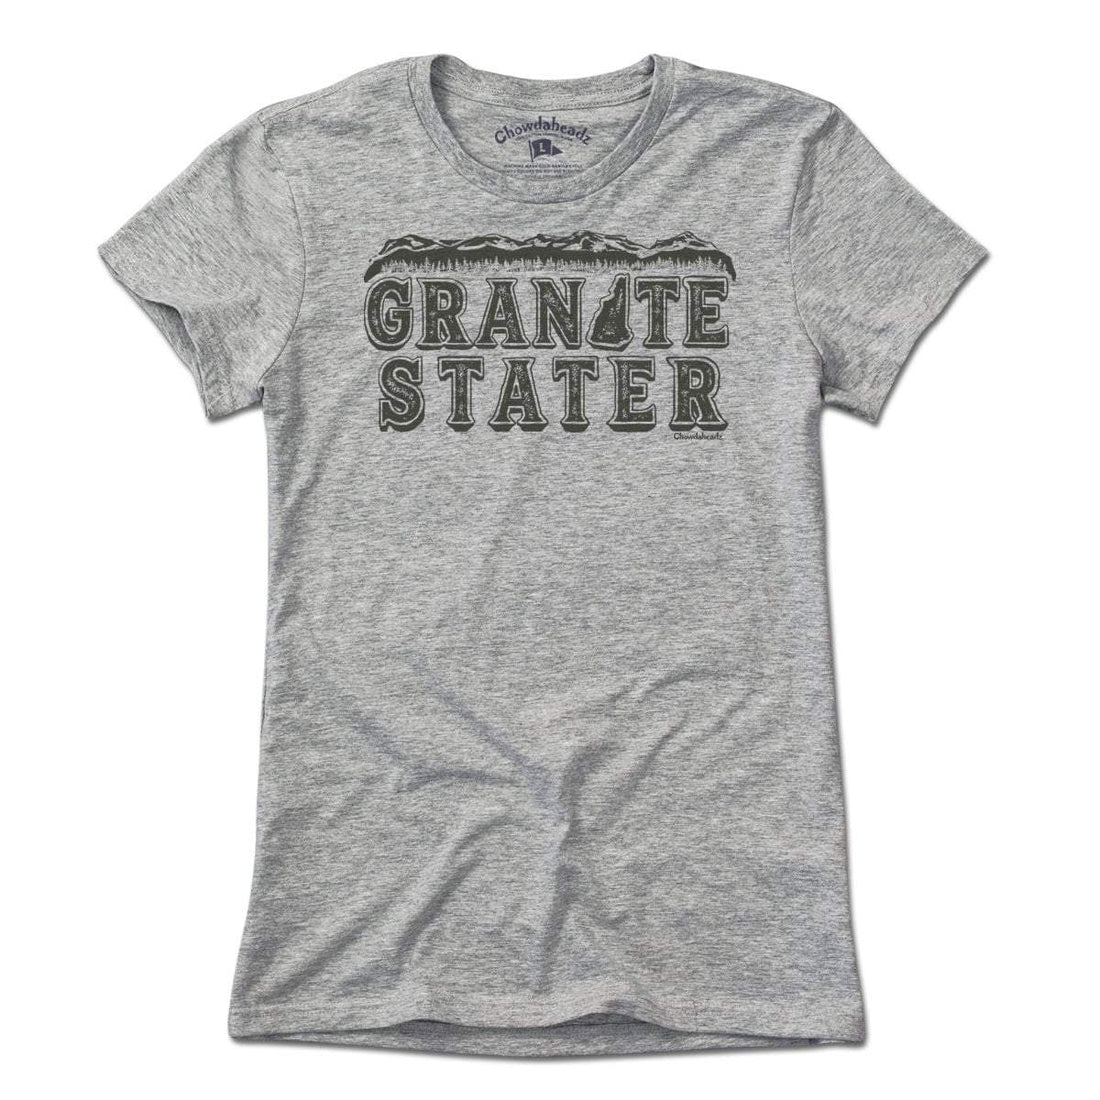 Granite Stater T-Shirt - Chowdaheadz